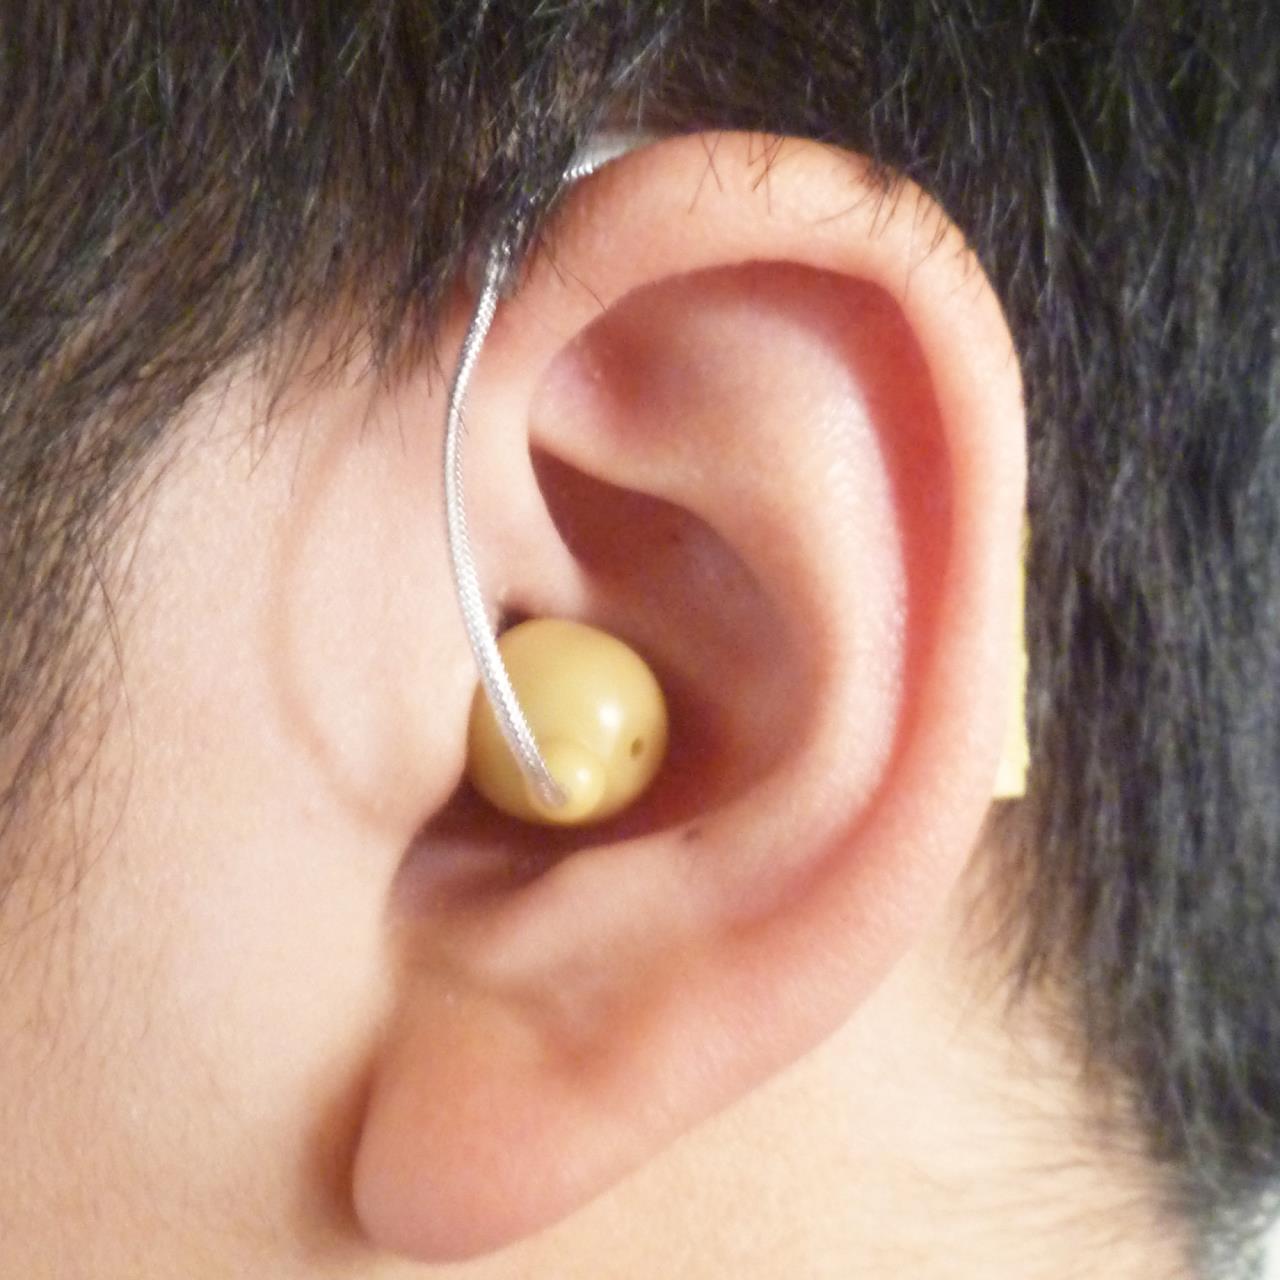 一对迷你耳背式助听器 BTE-27 可充电助听器 美国设计和制造 在全球销量超过 12,000 件